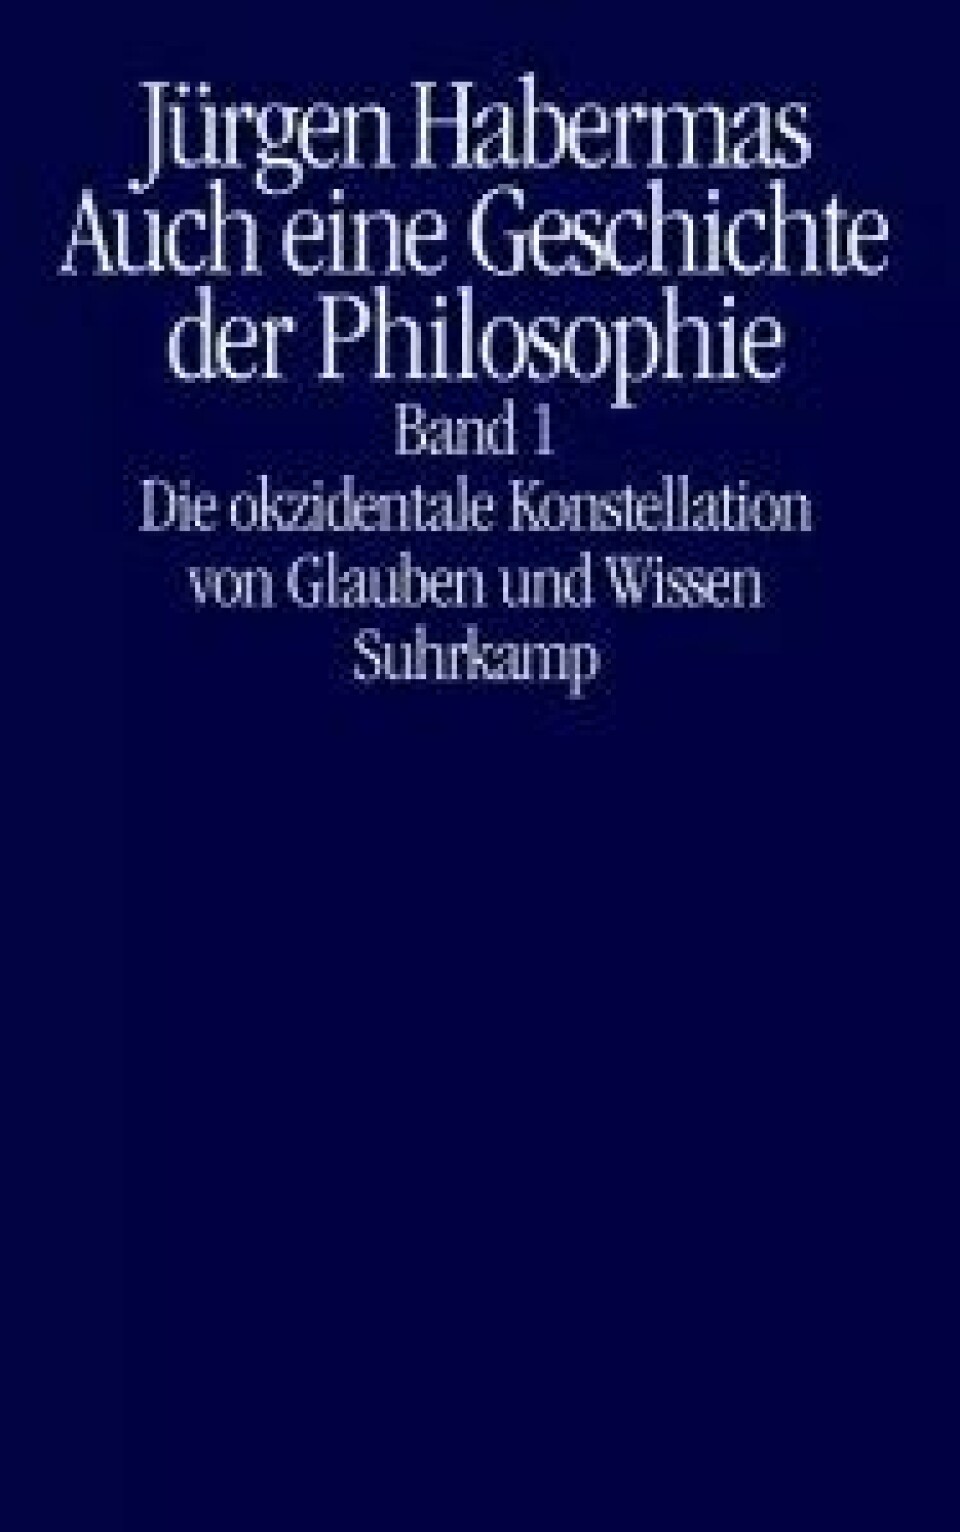 Auch eine Geshichte der Philosophie av Jürgen Habermas. Suhrkamp, 2019.